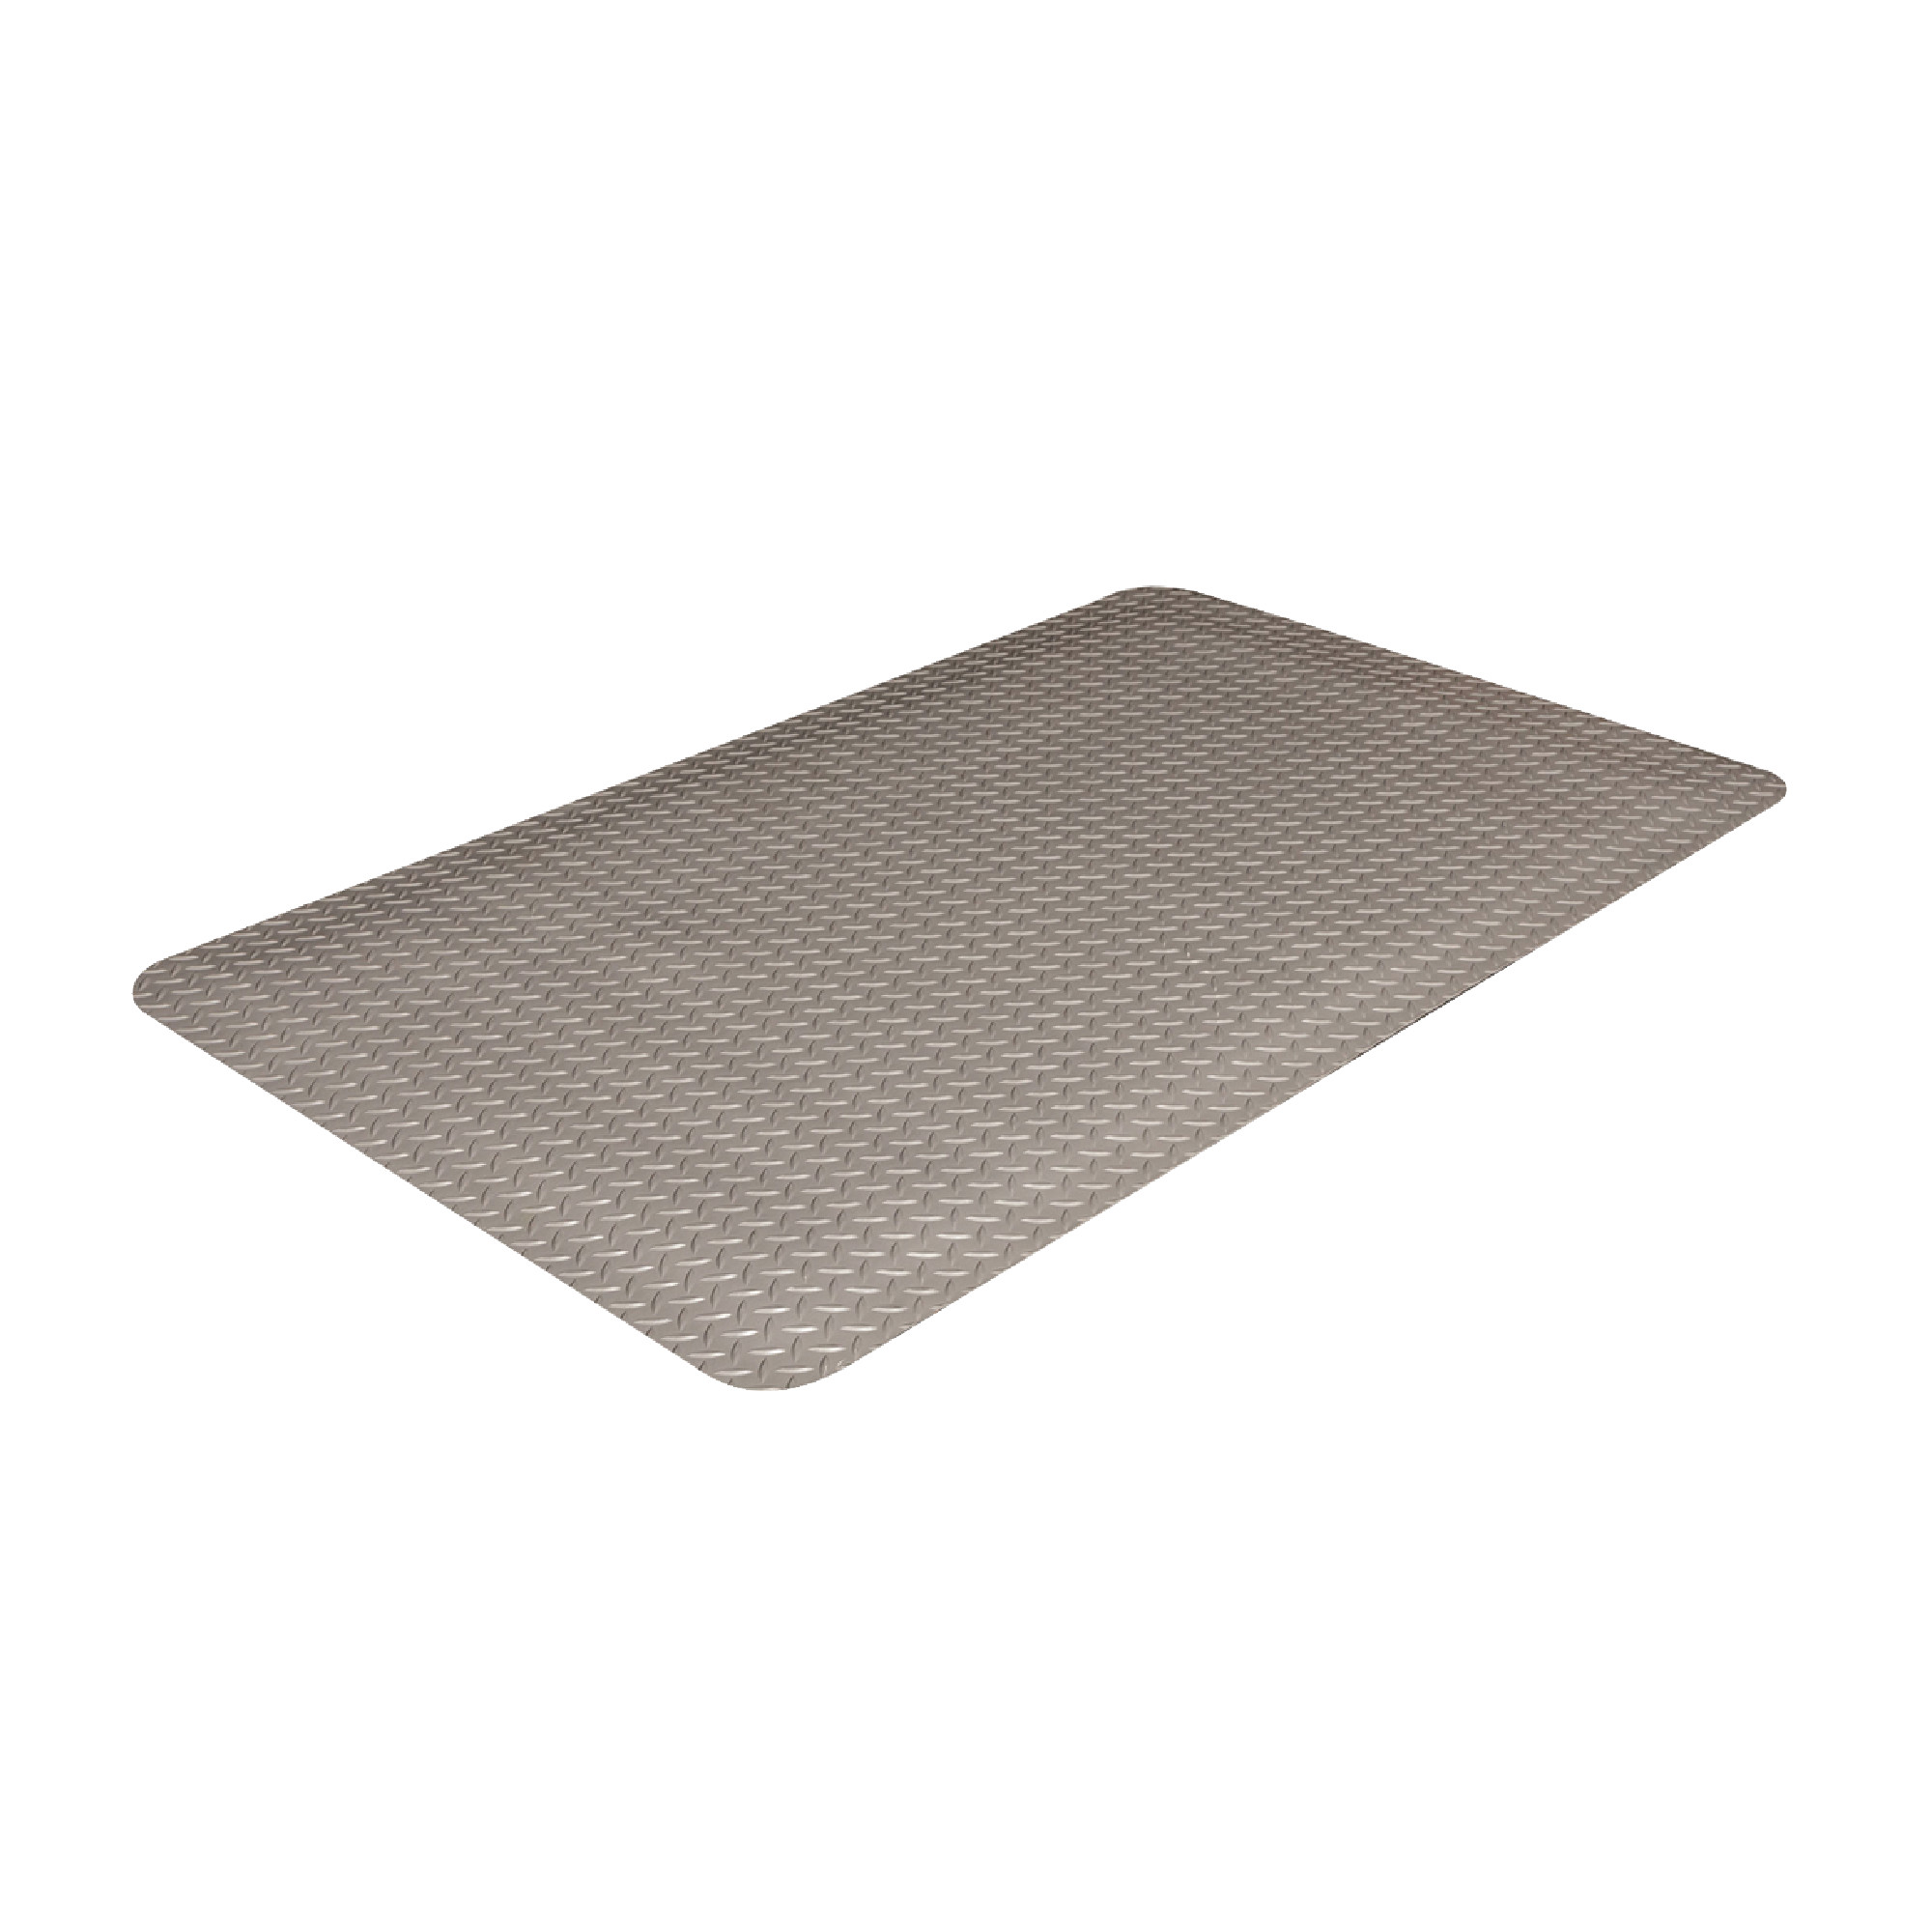 Industrial Deck Plate #505 Mat